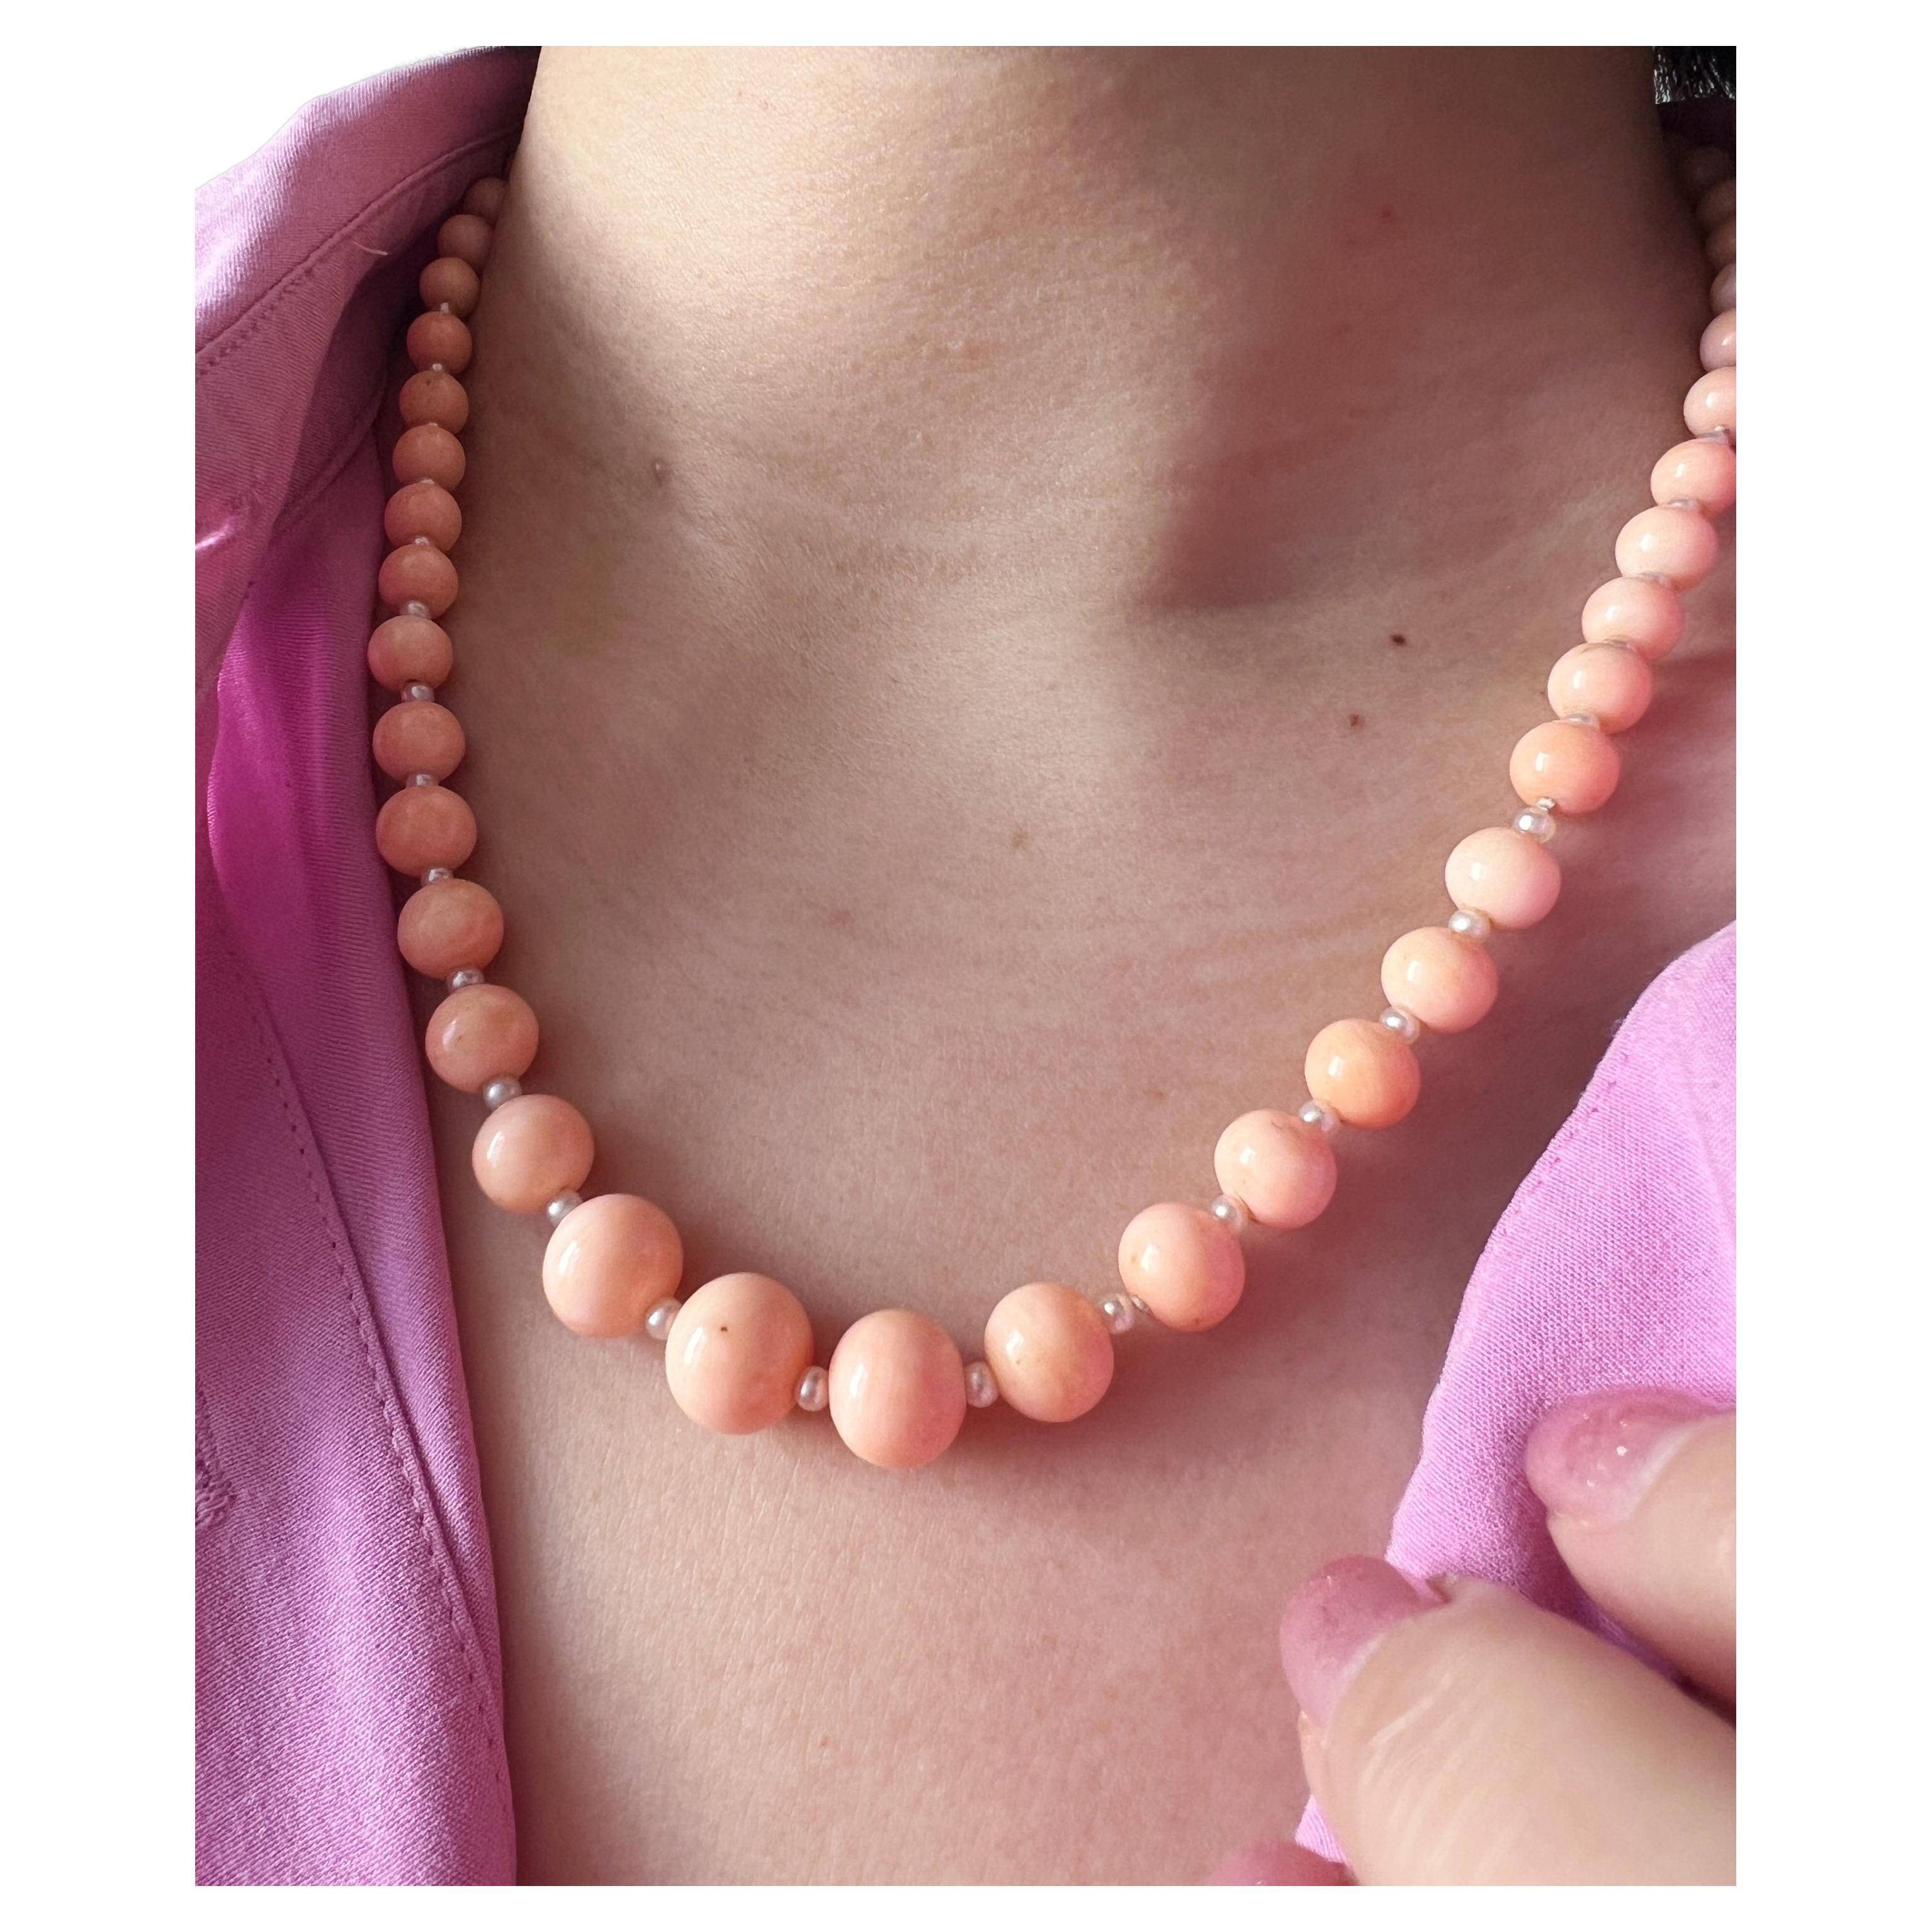 Sanft wie eine Frühlingsbrise ist diese wunderschöne rosafarbene Engelshaut-Korallen- und Perlenkette ein leicht zu tragendes Schmuckstück, das Sie auf den kommenden Frühling einstimmt!

Dieser abgestufte Strang besteht aus 55 rosafarbenen